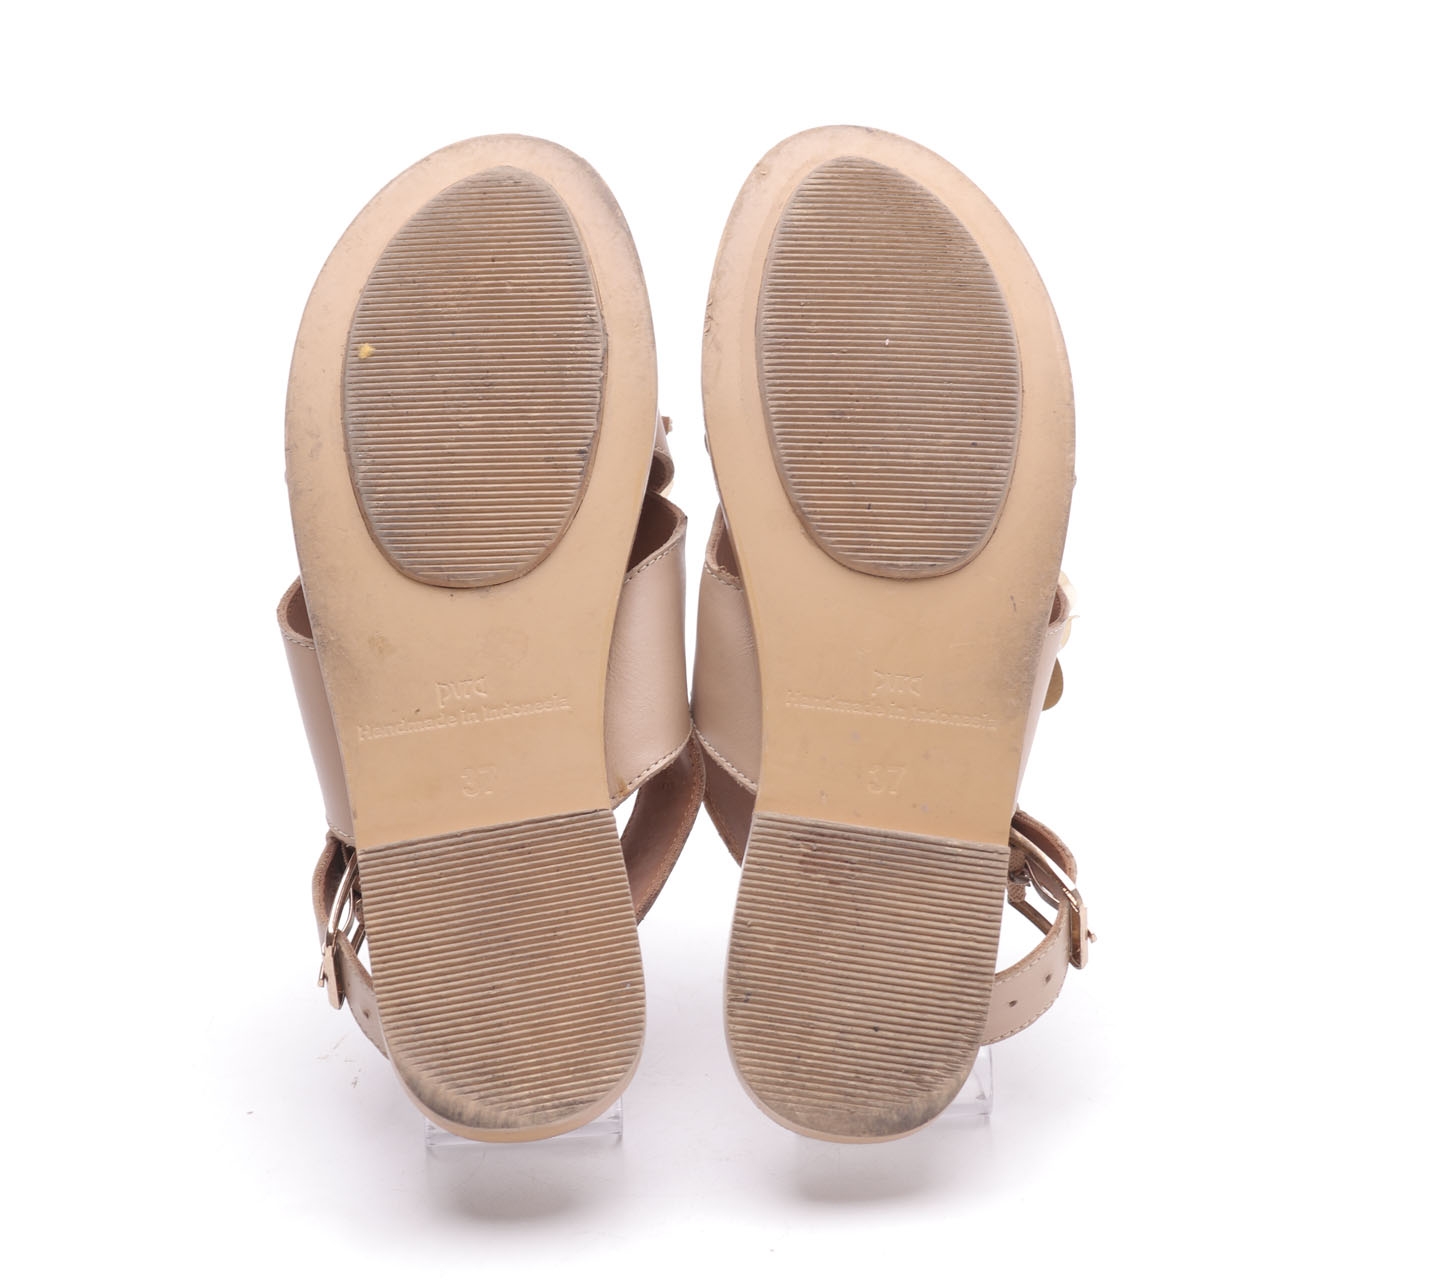 Pvra Cavva Light Tan Sandals